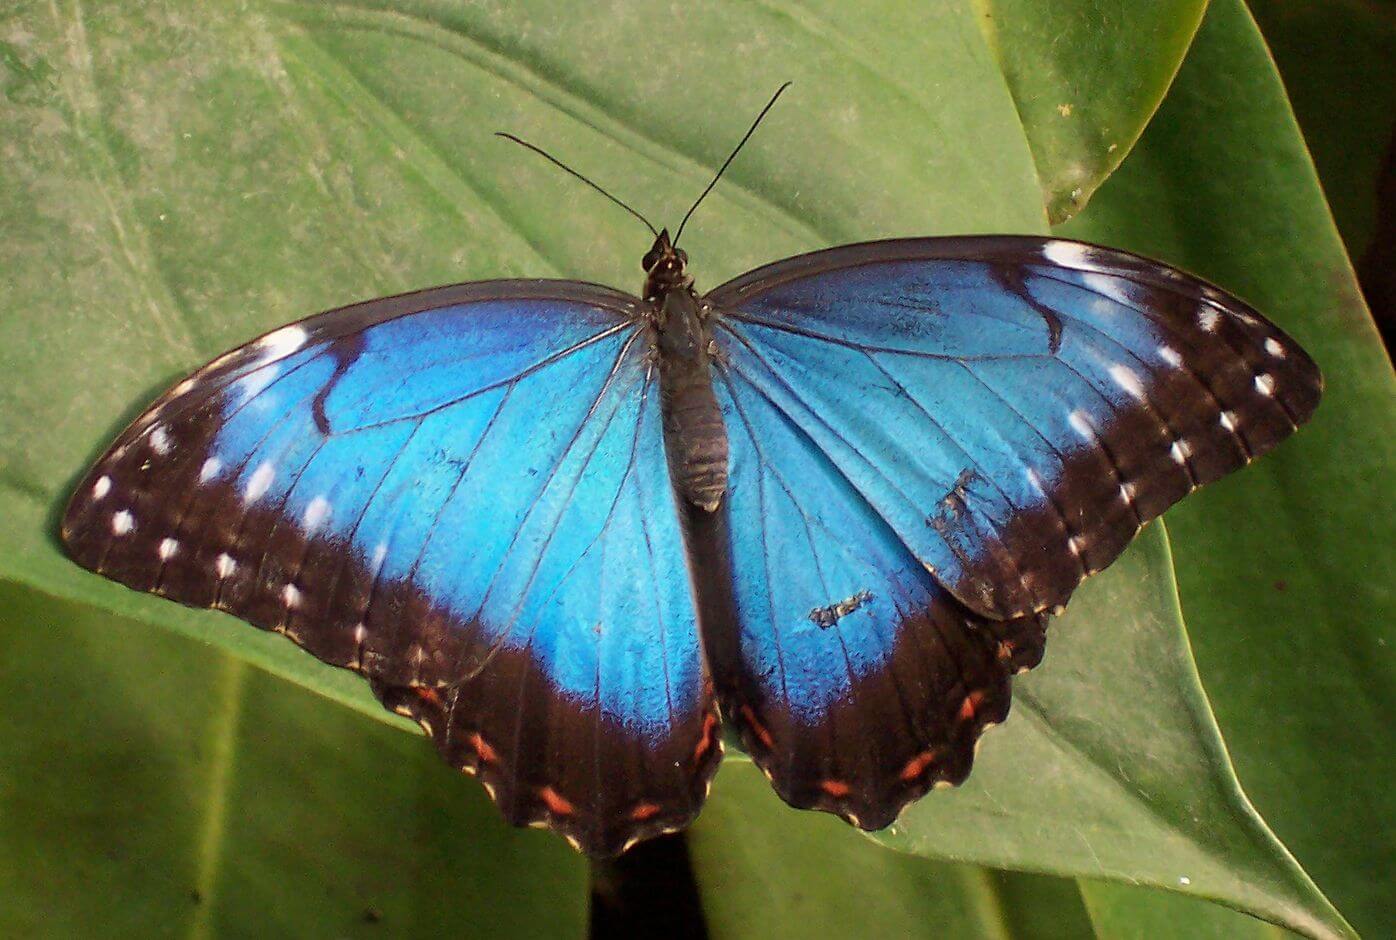 Perché le ali delle farfalle non si rompono sotto i pesanti gocce di pioggia?